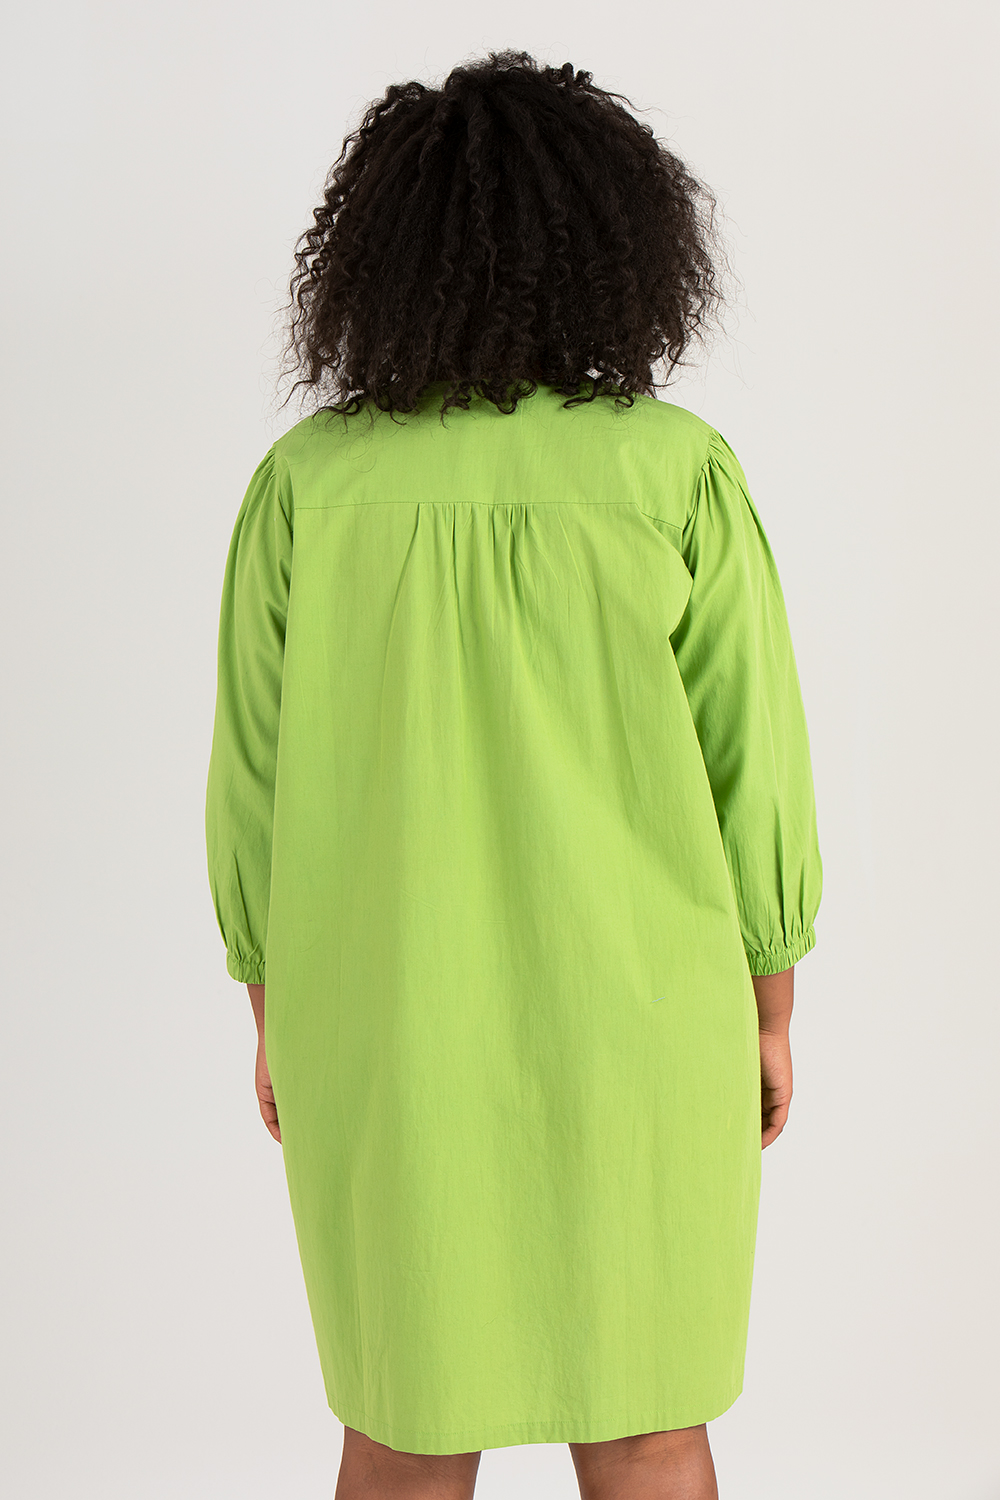 Silje klänning/skjorta grön